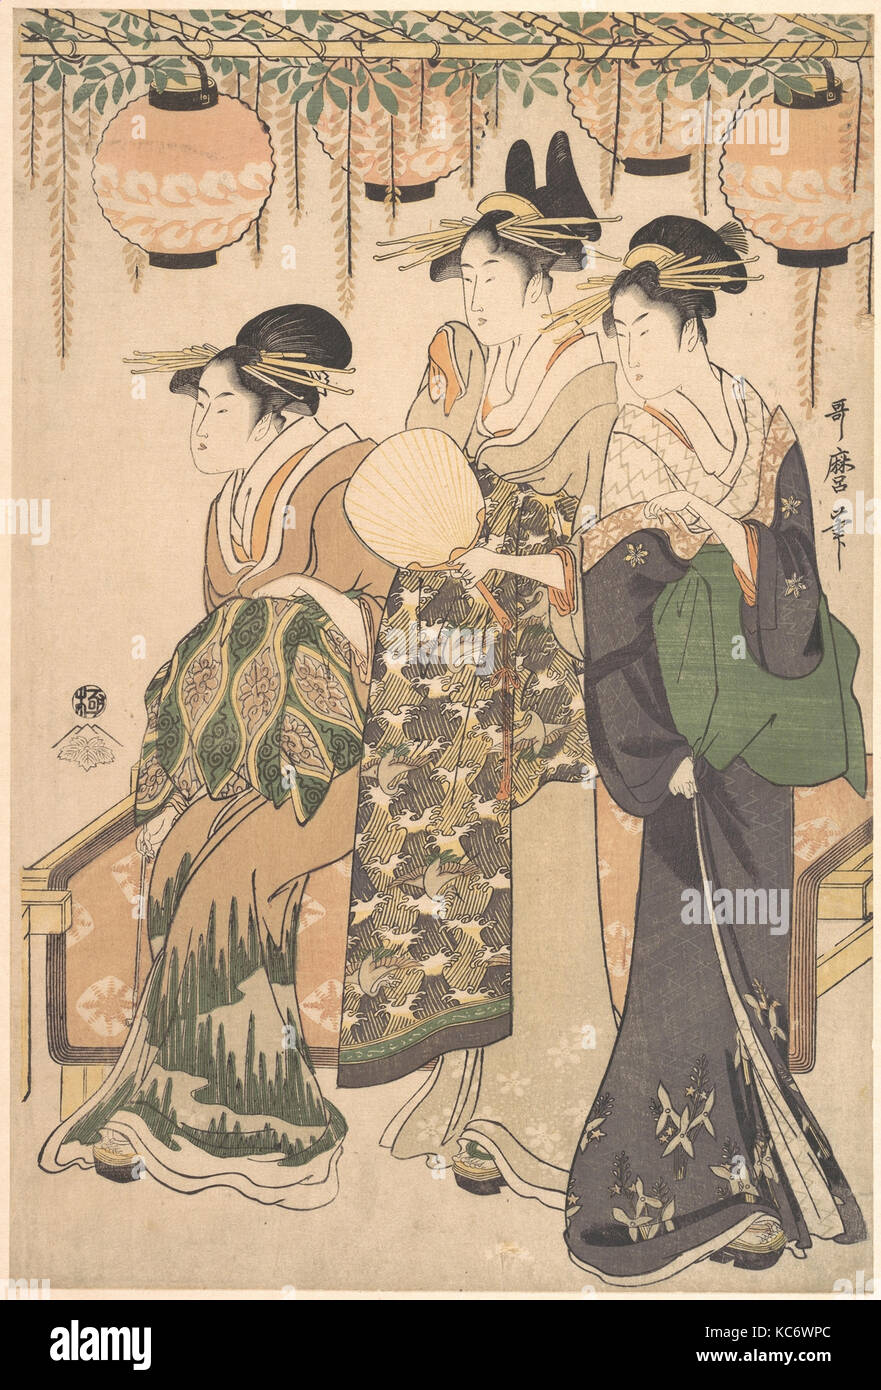 藤棚下の遊女たち, Courtesans Beneath a Wisteria Arbor (Fuji dana shita no yūjo  tachi), Kitagawa Utamaro, ca. 1795 Stock Photo - Alamy